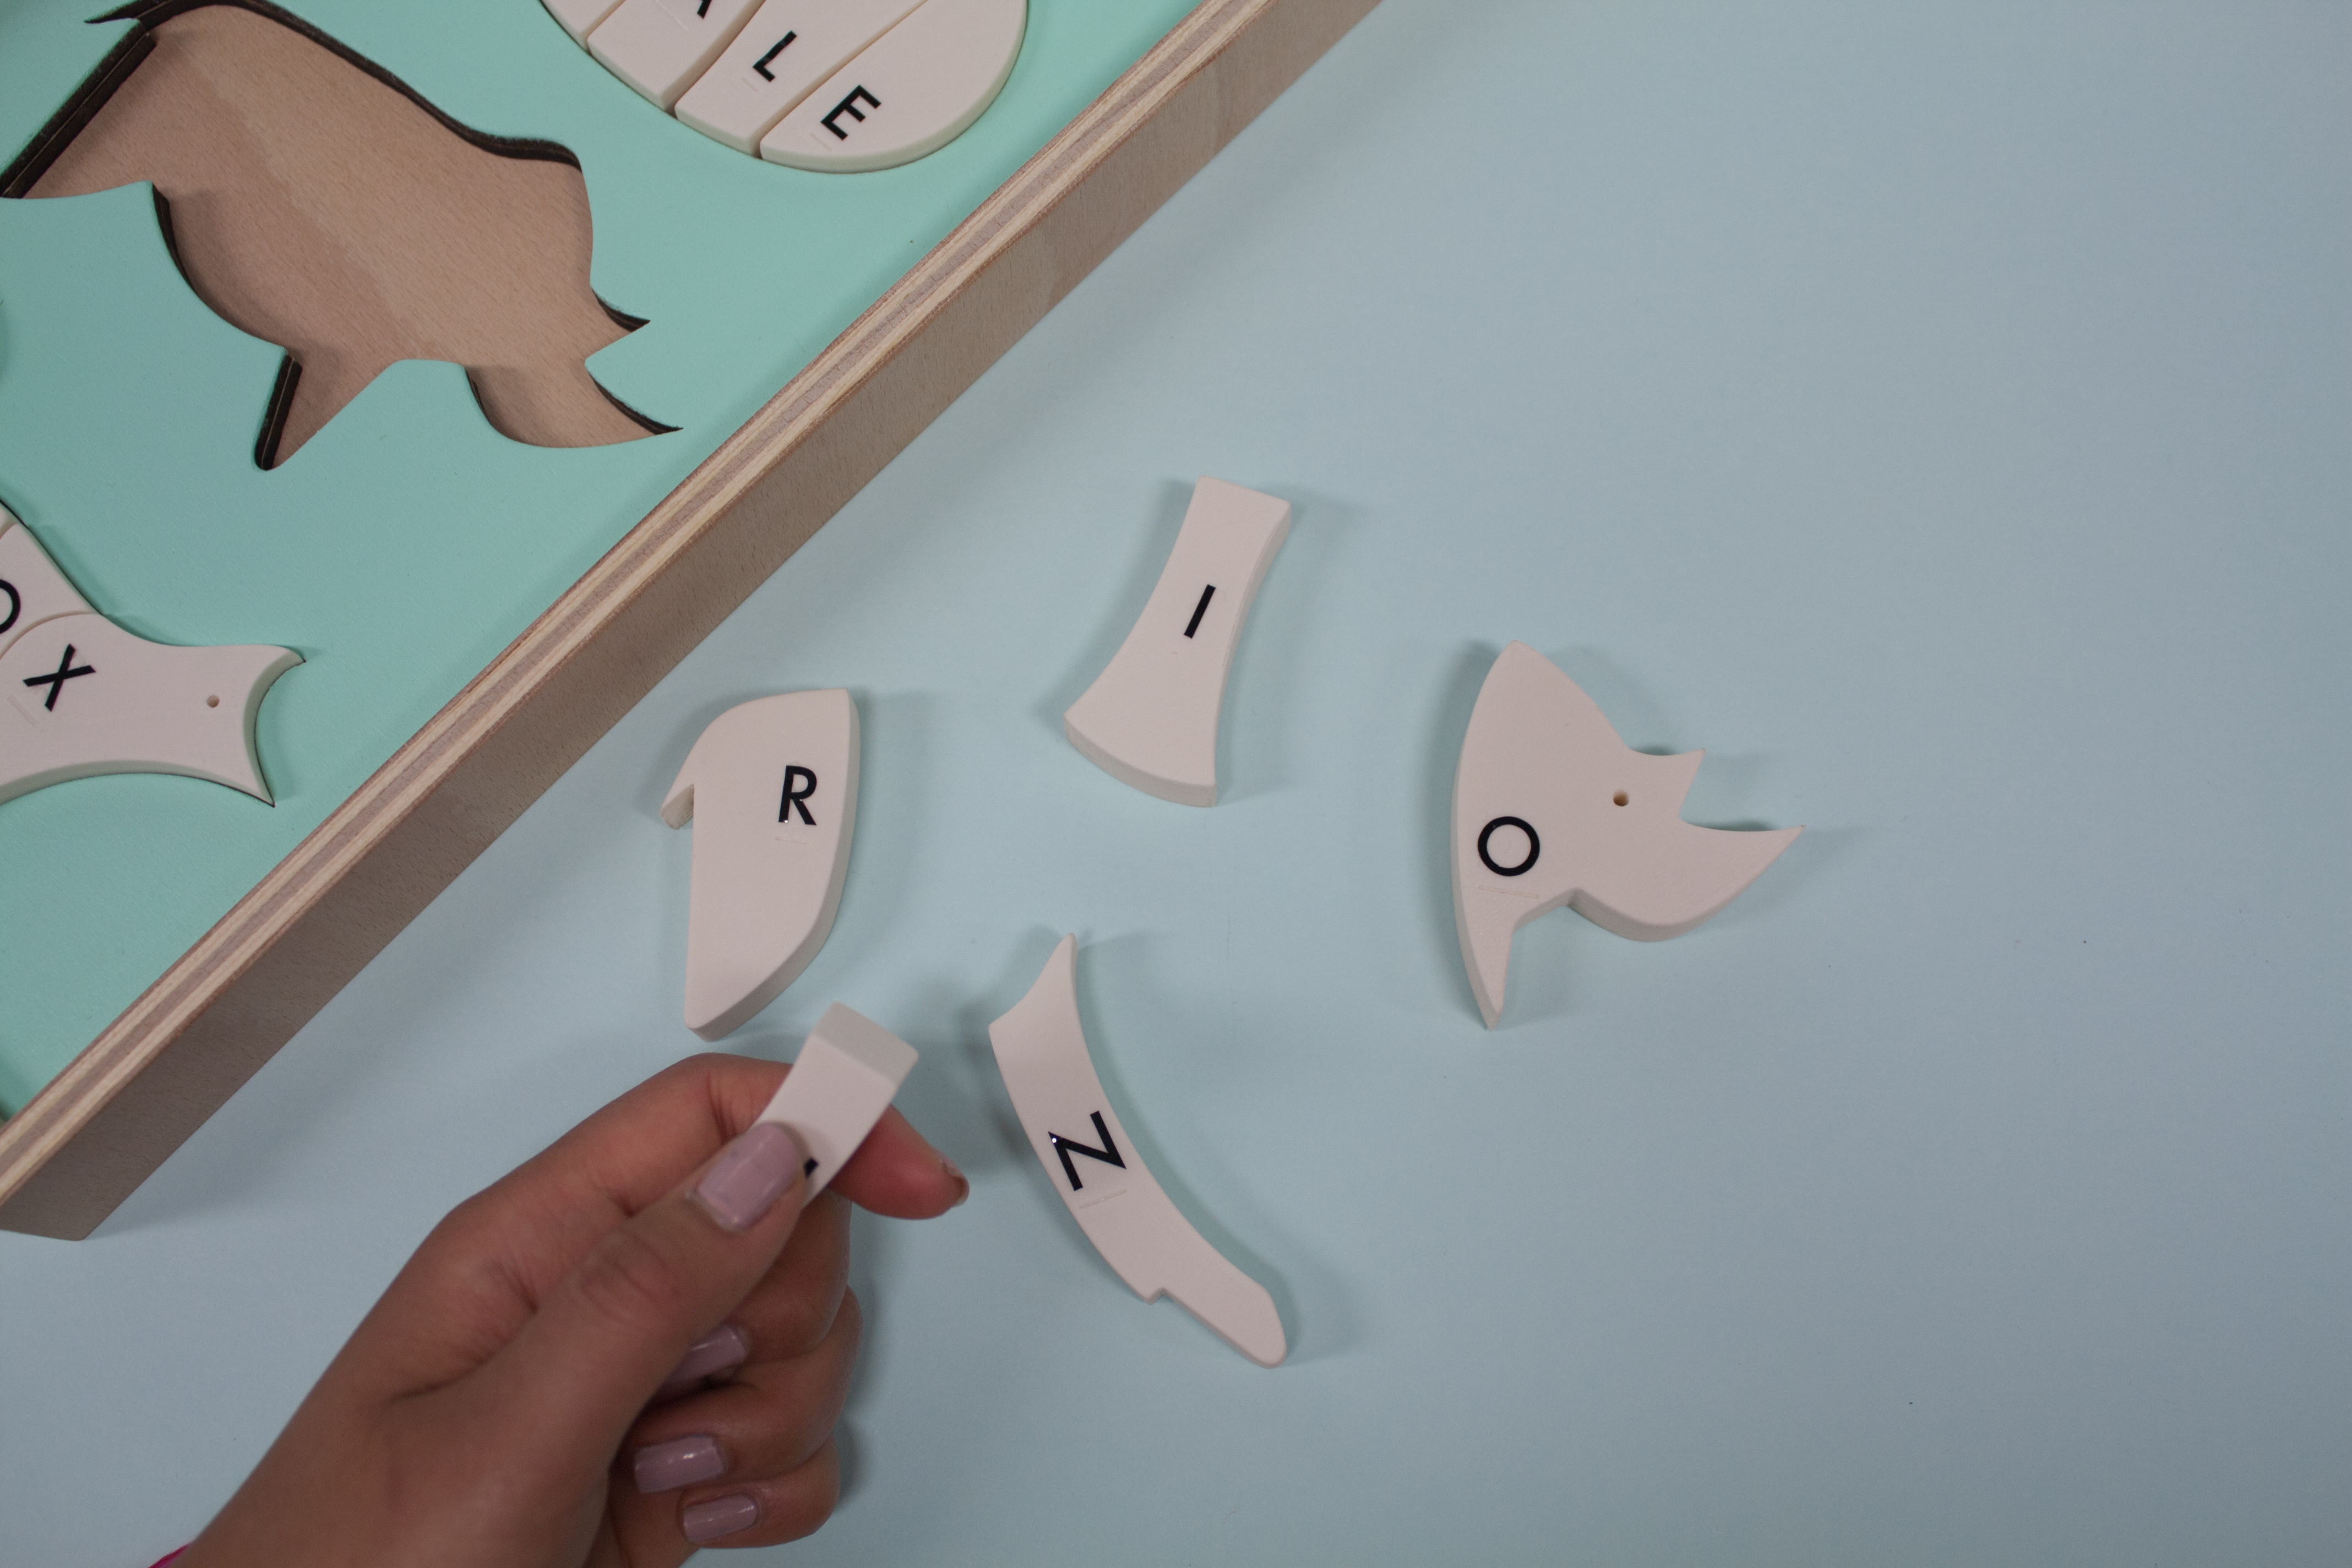 Eine Hand sucht durch erfühlen der Buchstaben in Braille-Schrift das passende H Stück zum Rhinozeros.